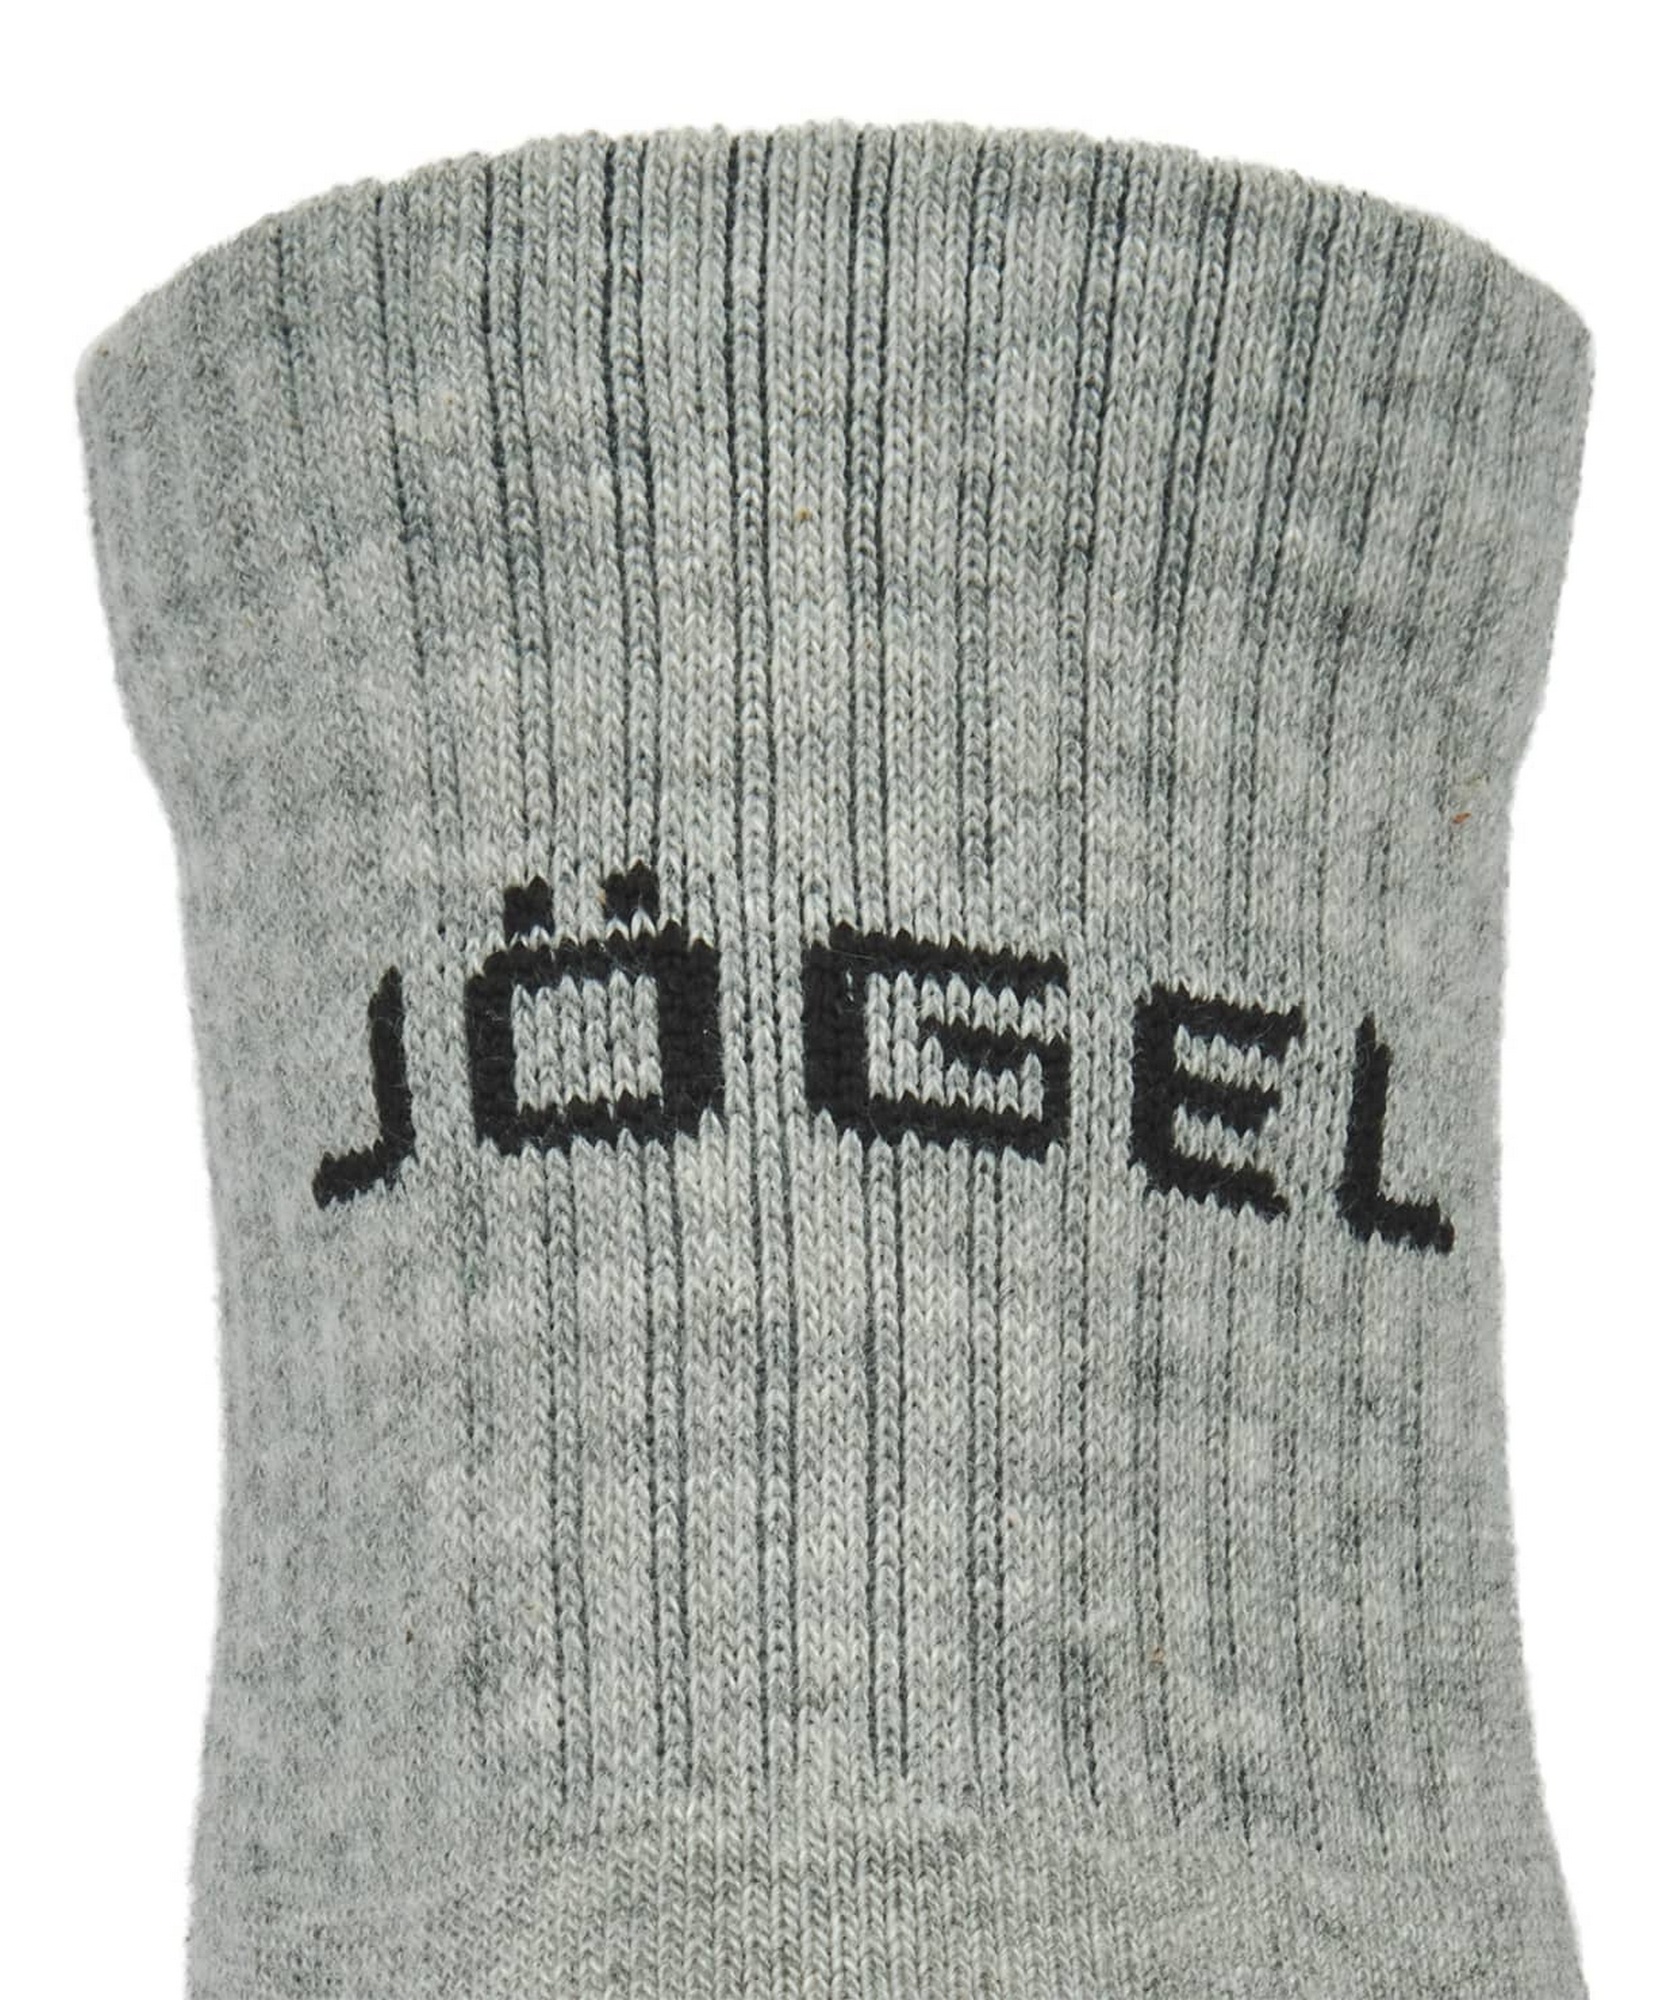 Носки средние Jogel ESSENTIAL Mid Cushioned Socks меланжевый 1663_2000